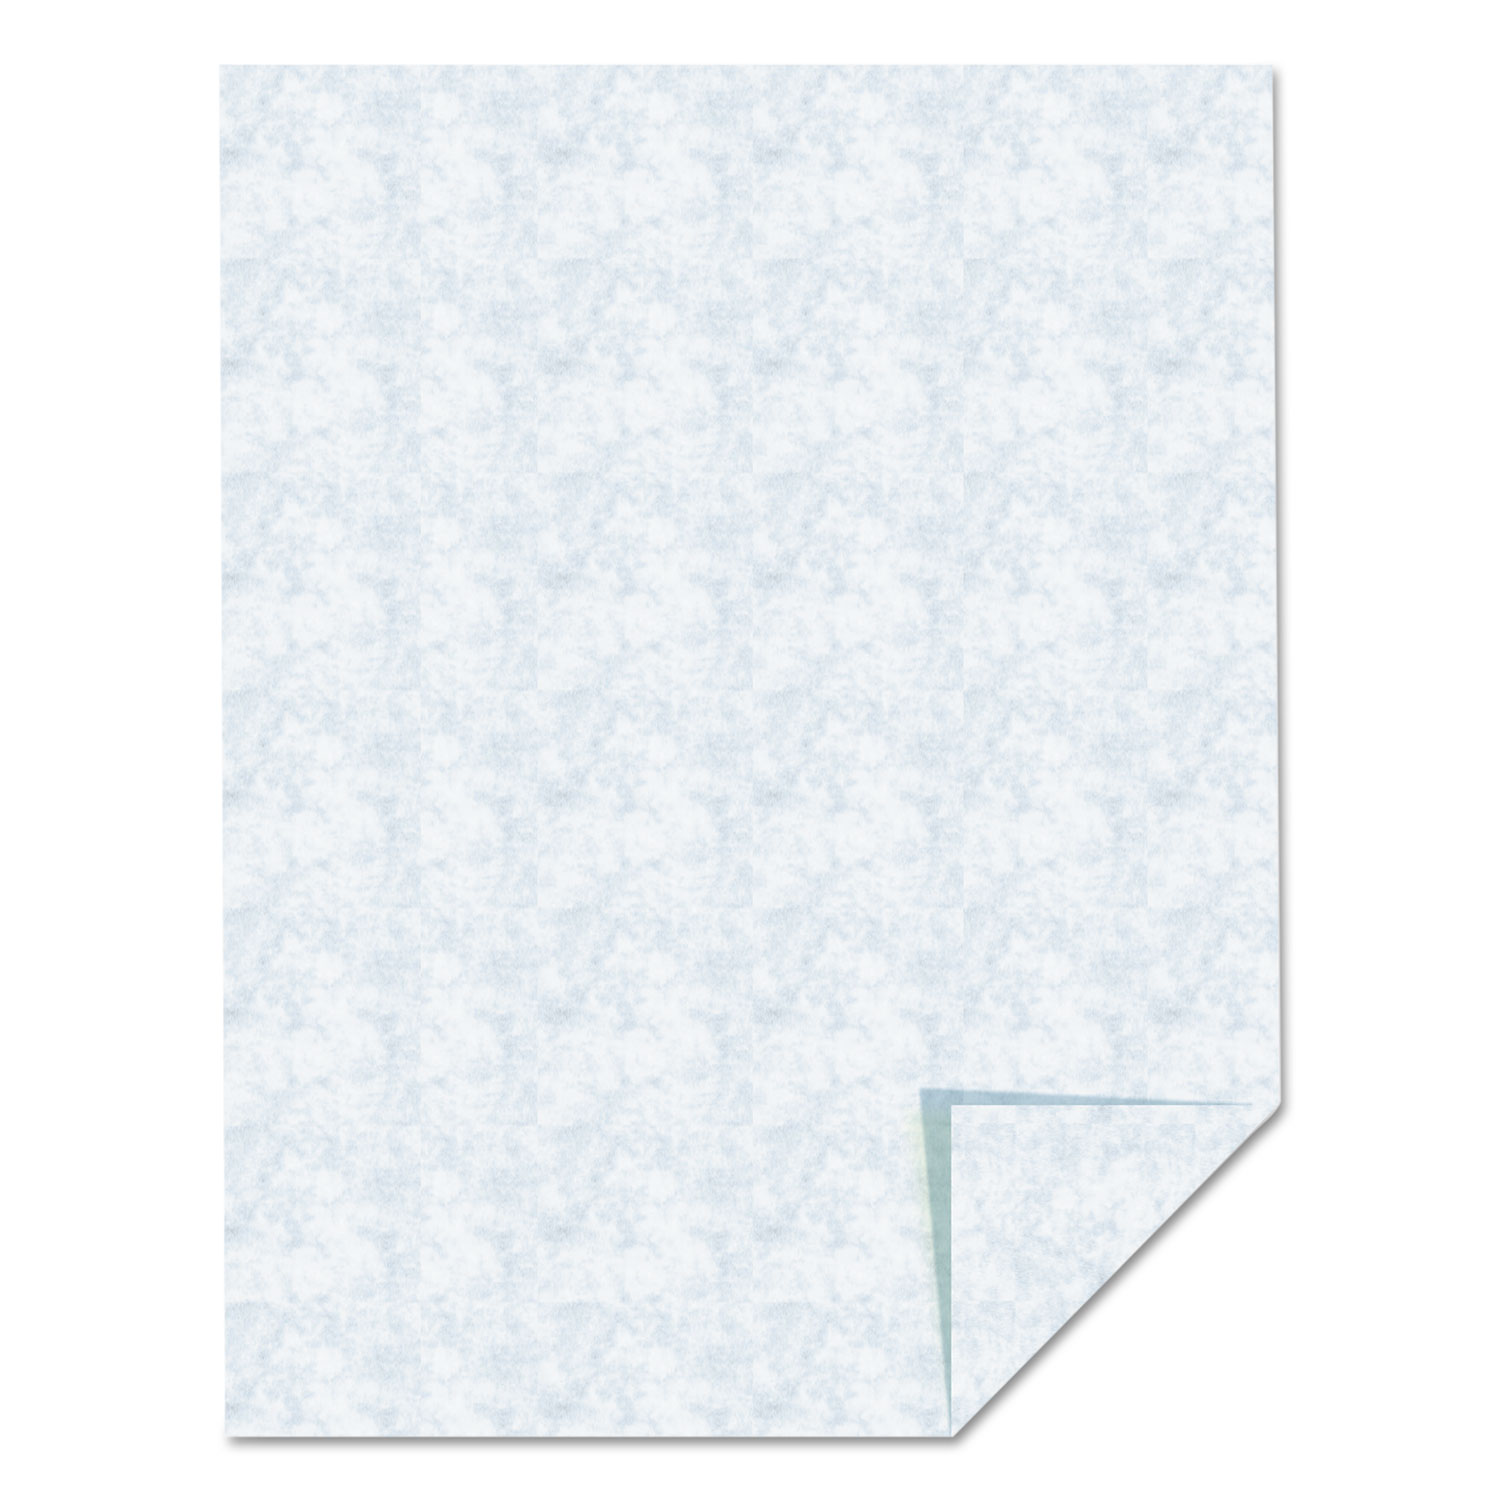 Parchment Specialty Paper, Blue, 24lb, 8 1/2 x 11, 100 Sheets